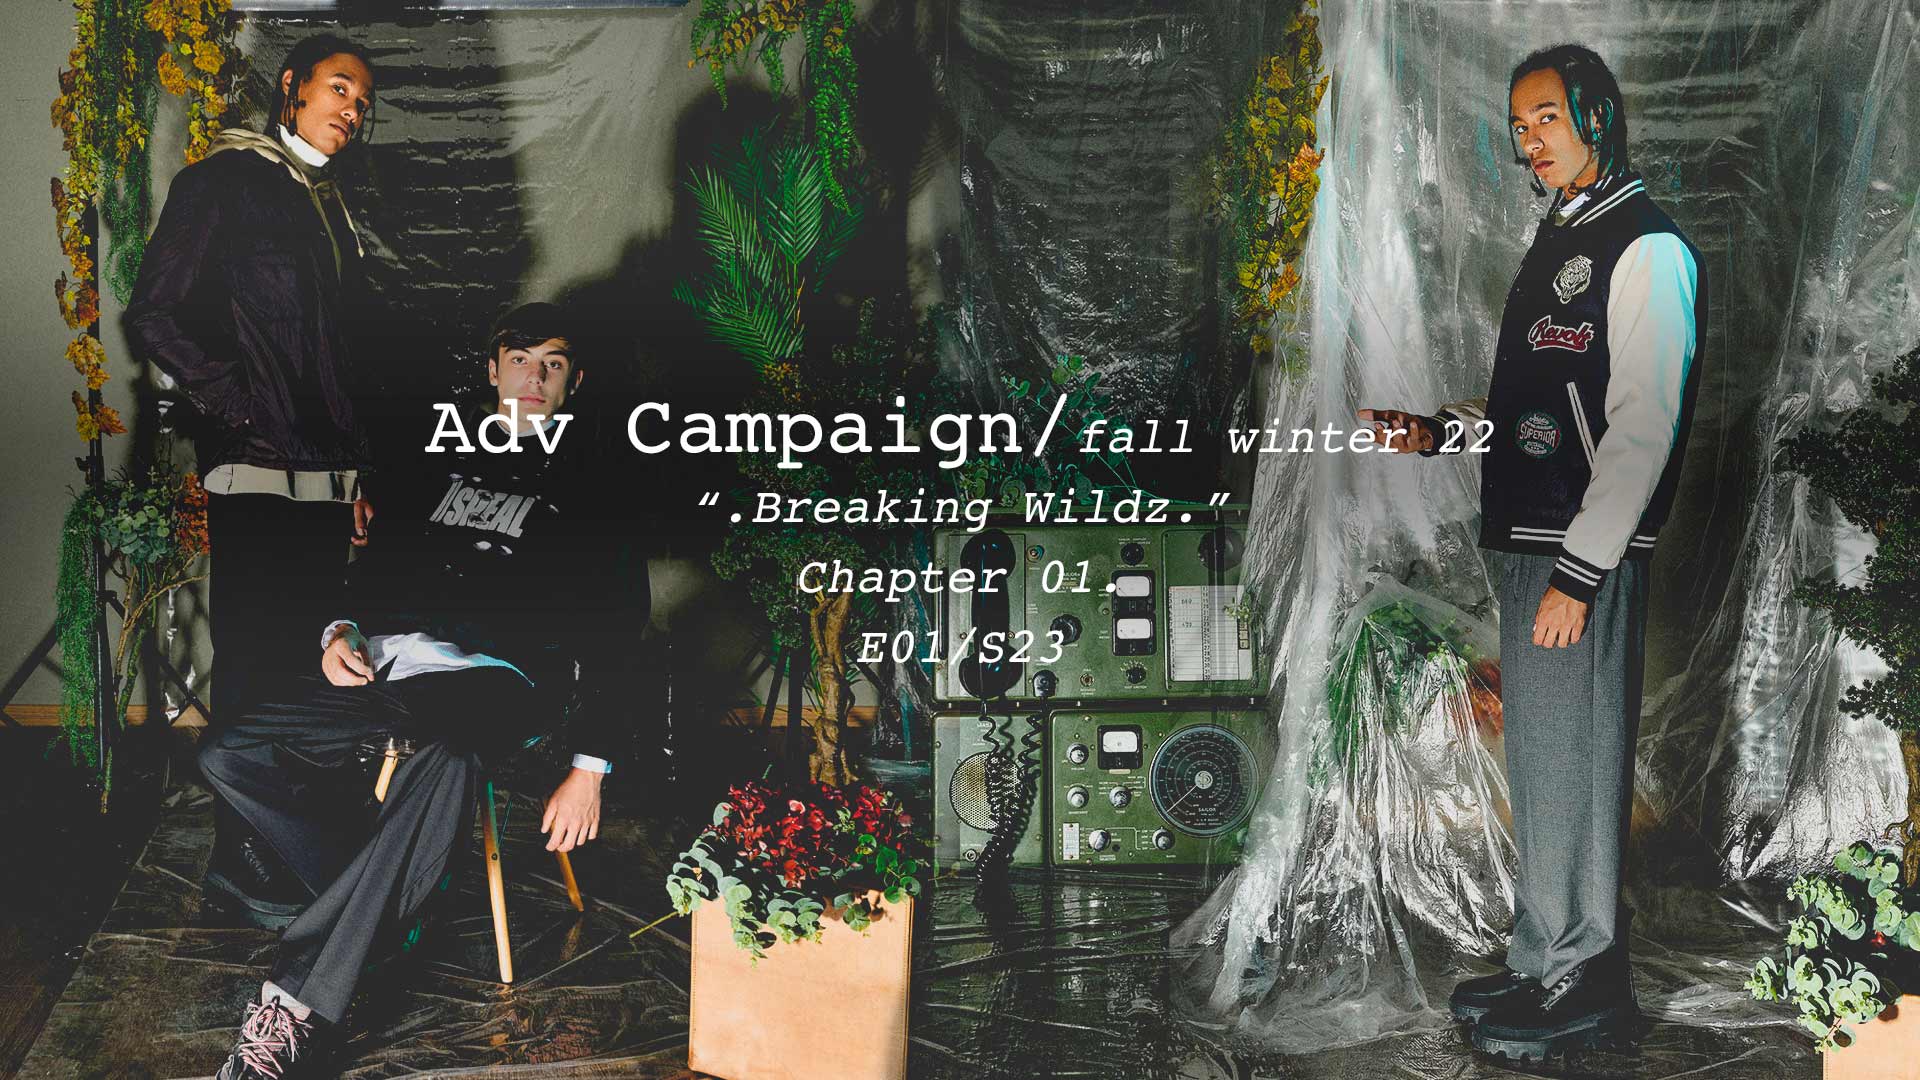 Breaking Wildz. / fall winter 22 adv campaign